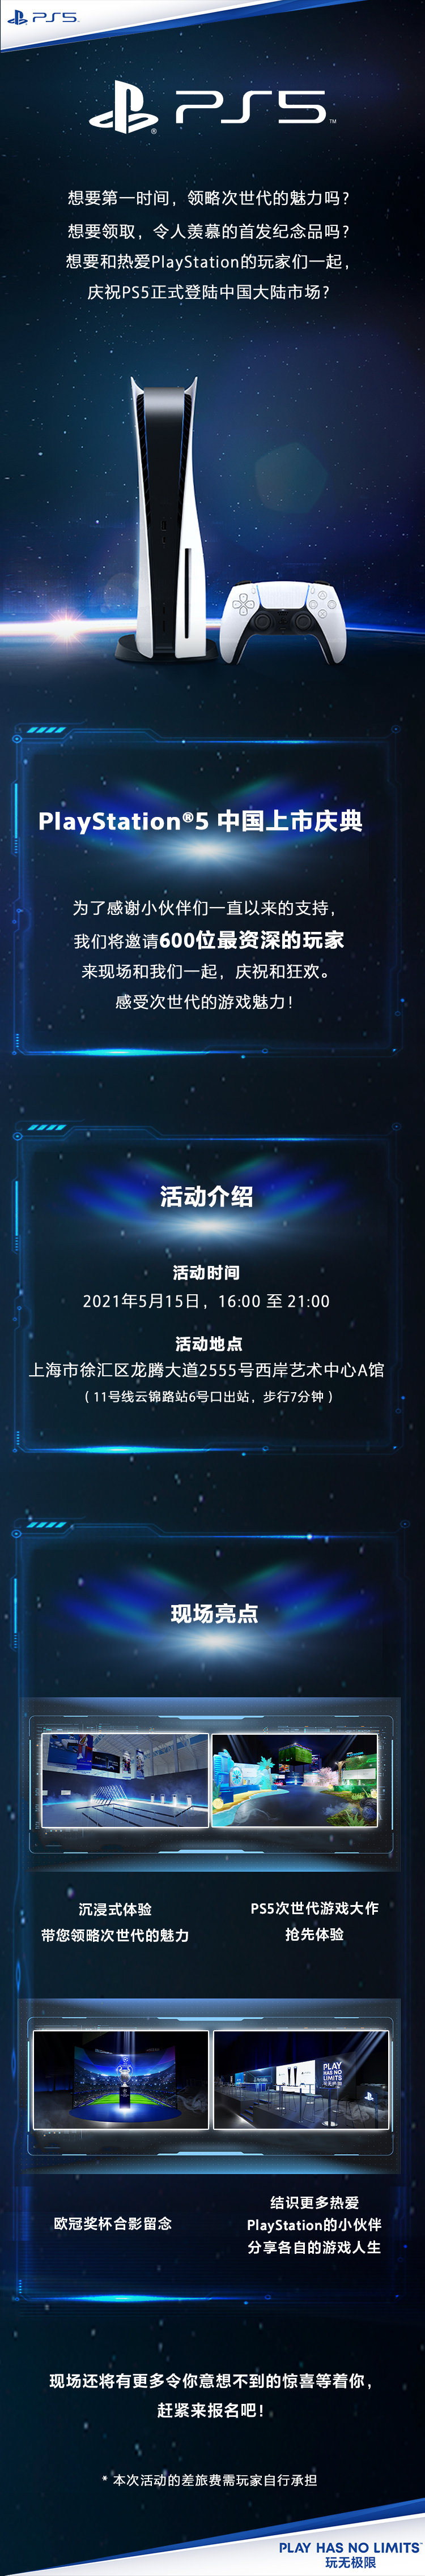 索尼将在上海举办PS5中国上市庆典 感受次世代